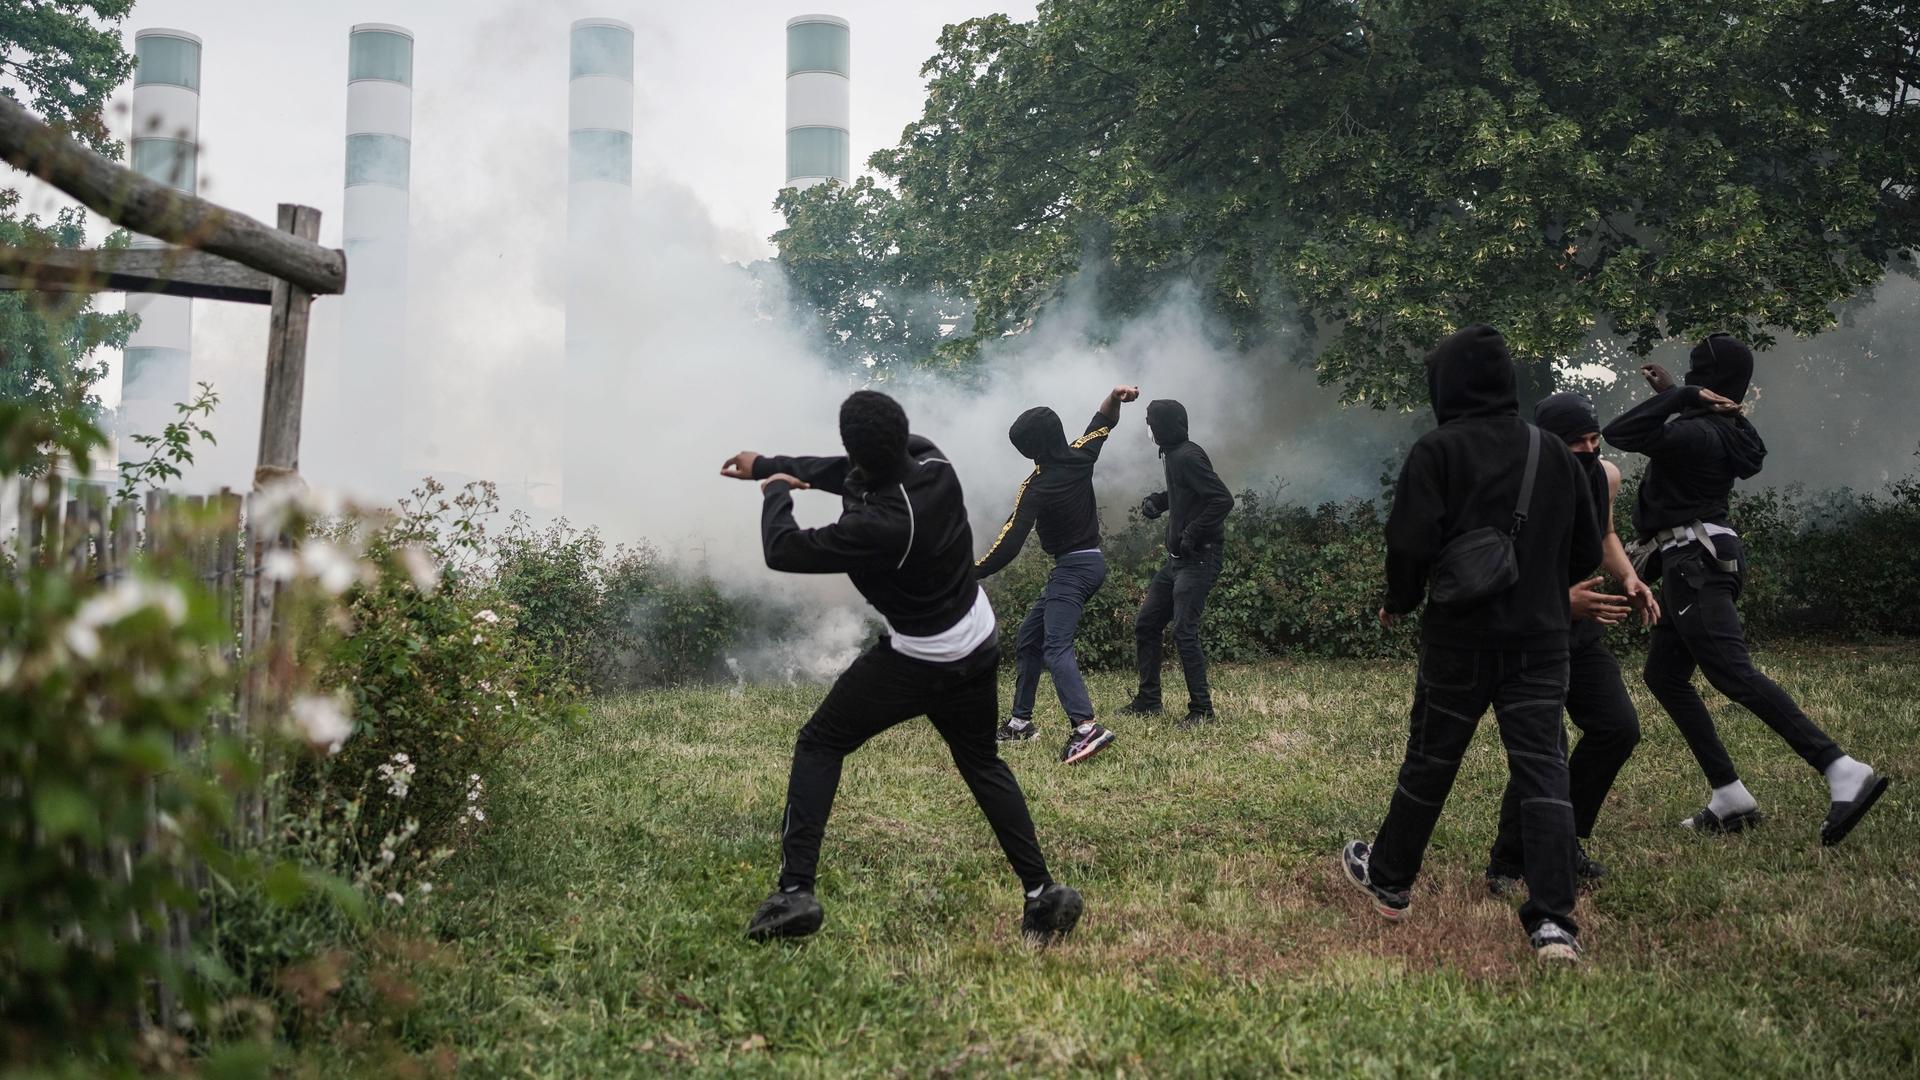 Jugendliche Demonstranten werfen Gegenstände, während sie mit der französischen Polizei zusammenstoßen, am 29. Juni 2023 in Nanterre, Frankreich.